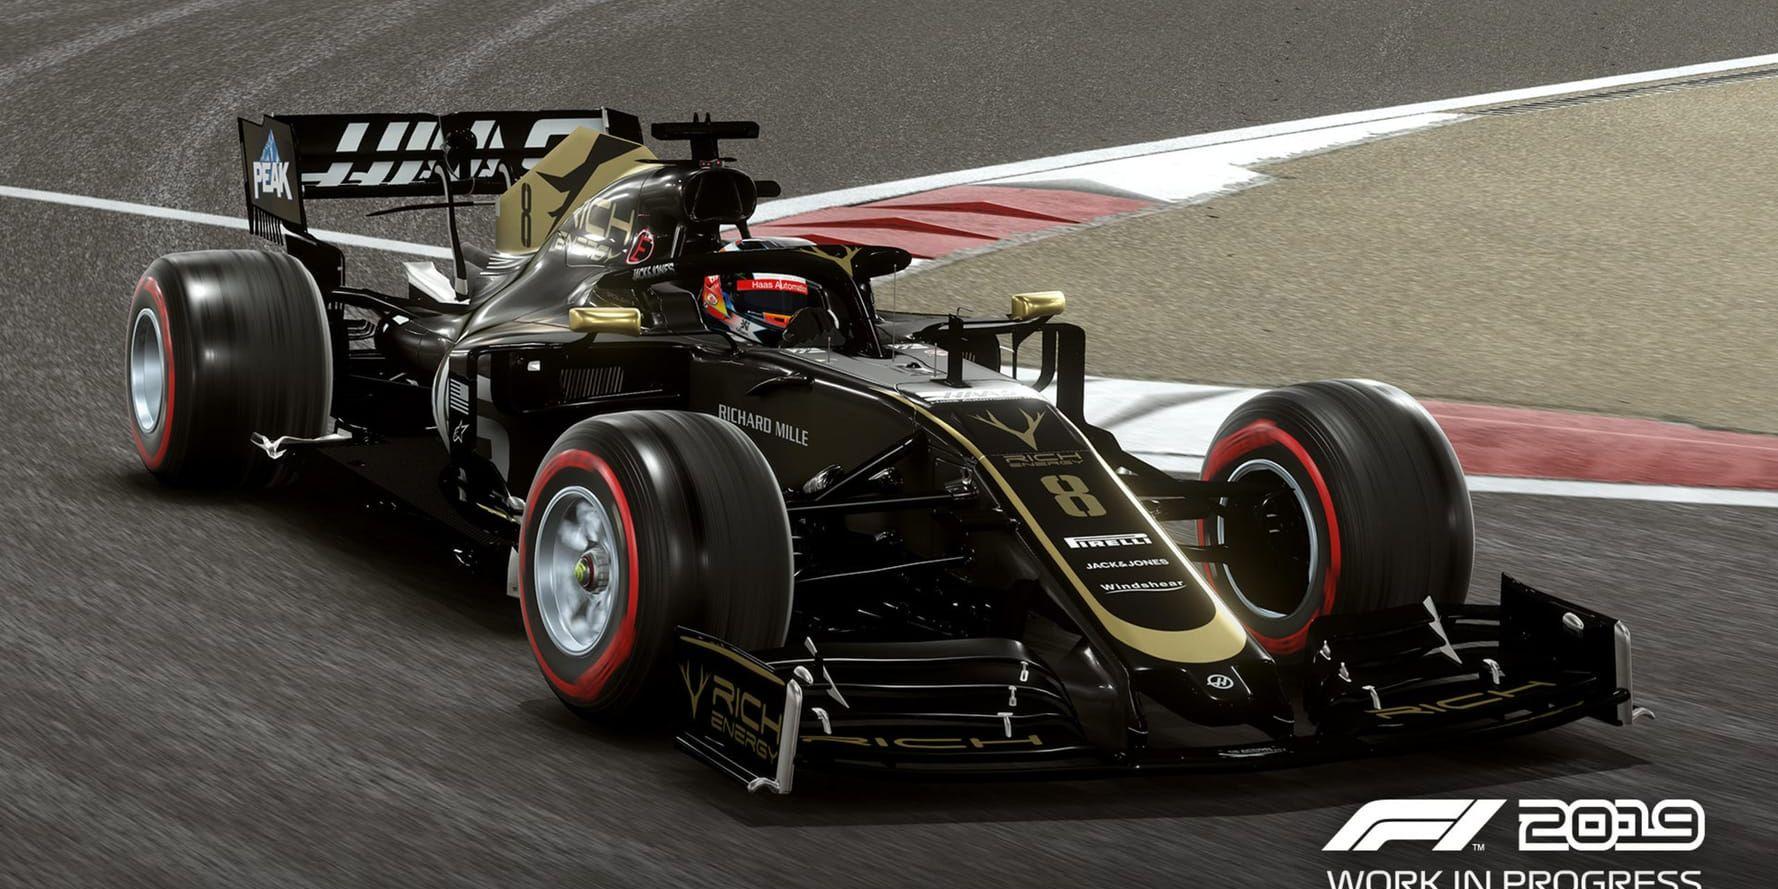 "F1" är tillbaka med den årliga uppdateringen av mästerskapen i spelform. Utvecklaren Codemasters har bland annat en fotograf som gått längs med banorna och tagit 360-gradersbilder. Pressbild.